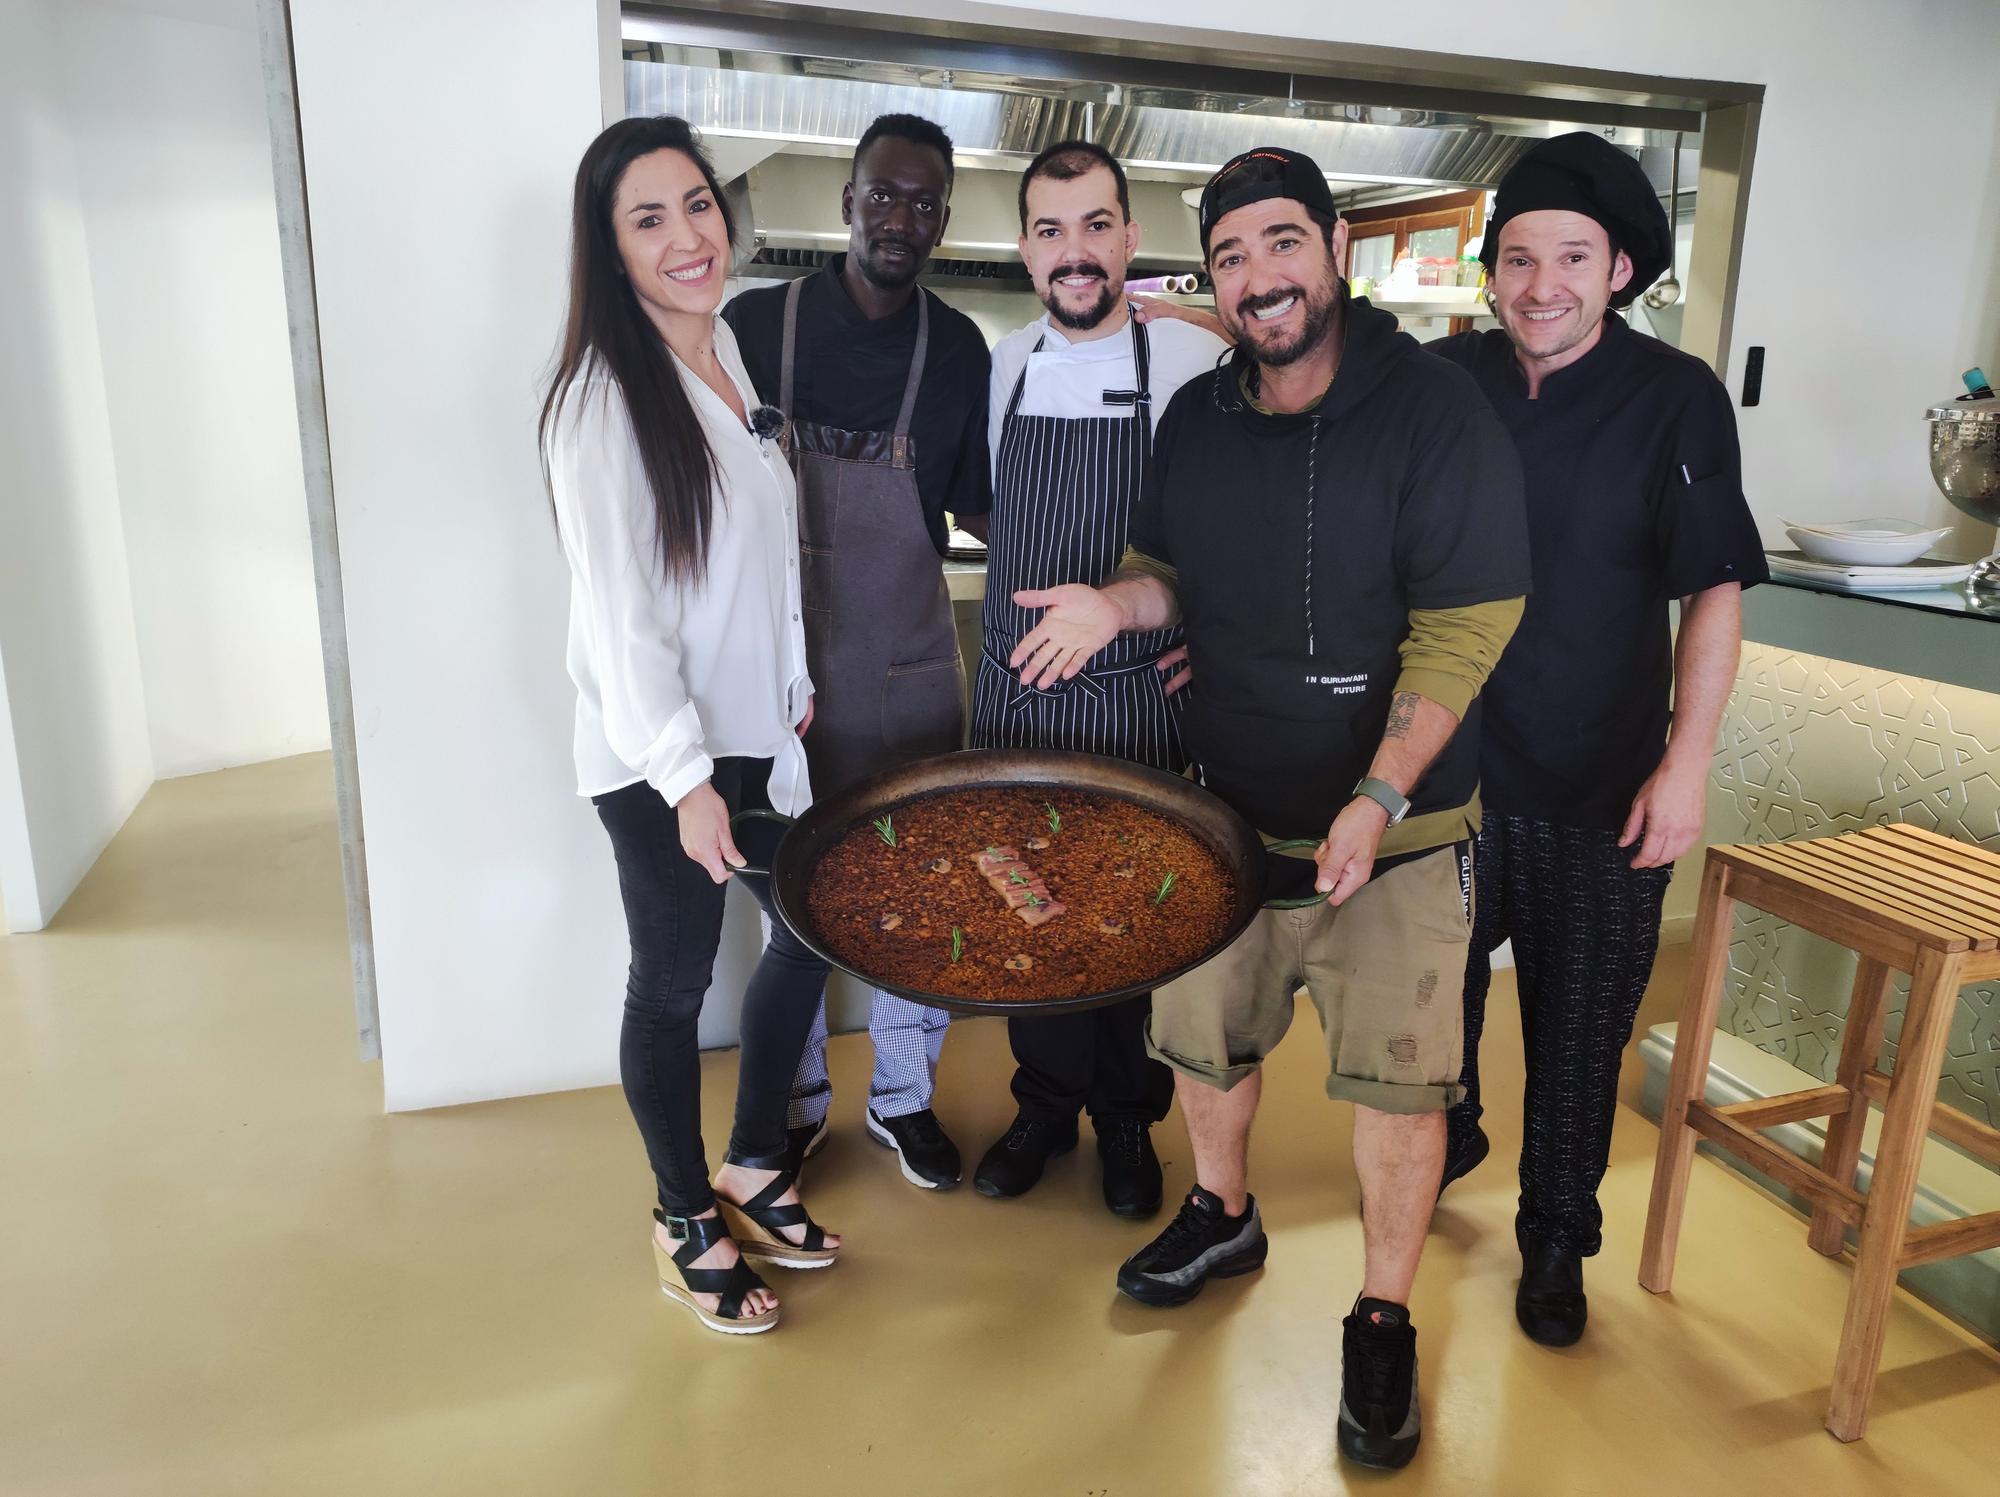 Elisabet Prat y Antonio Orozco, arroz en mano, junto al equipo del restaurante 5 arroces